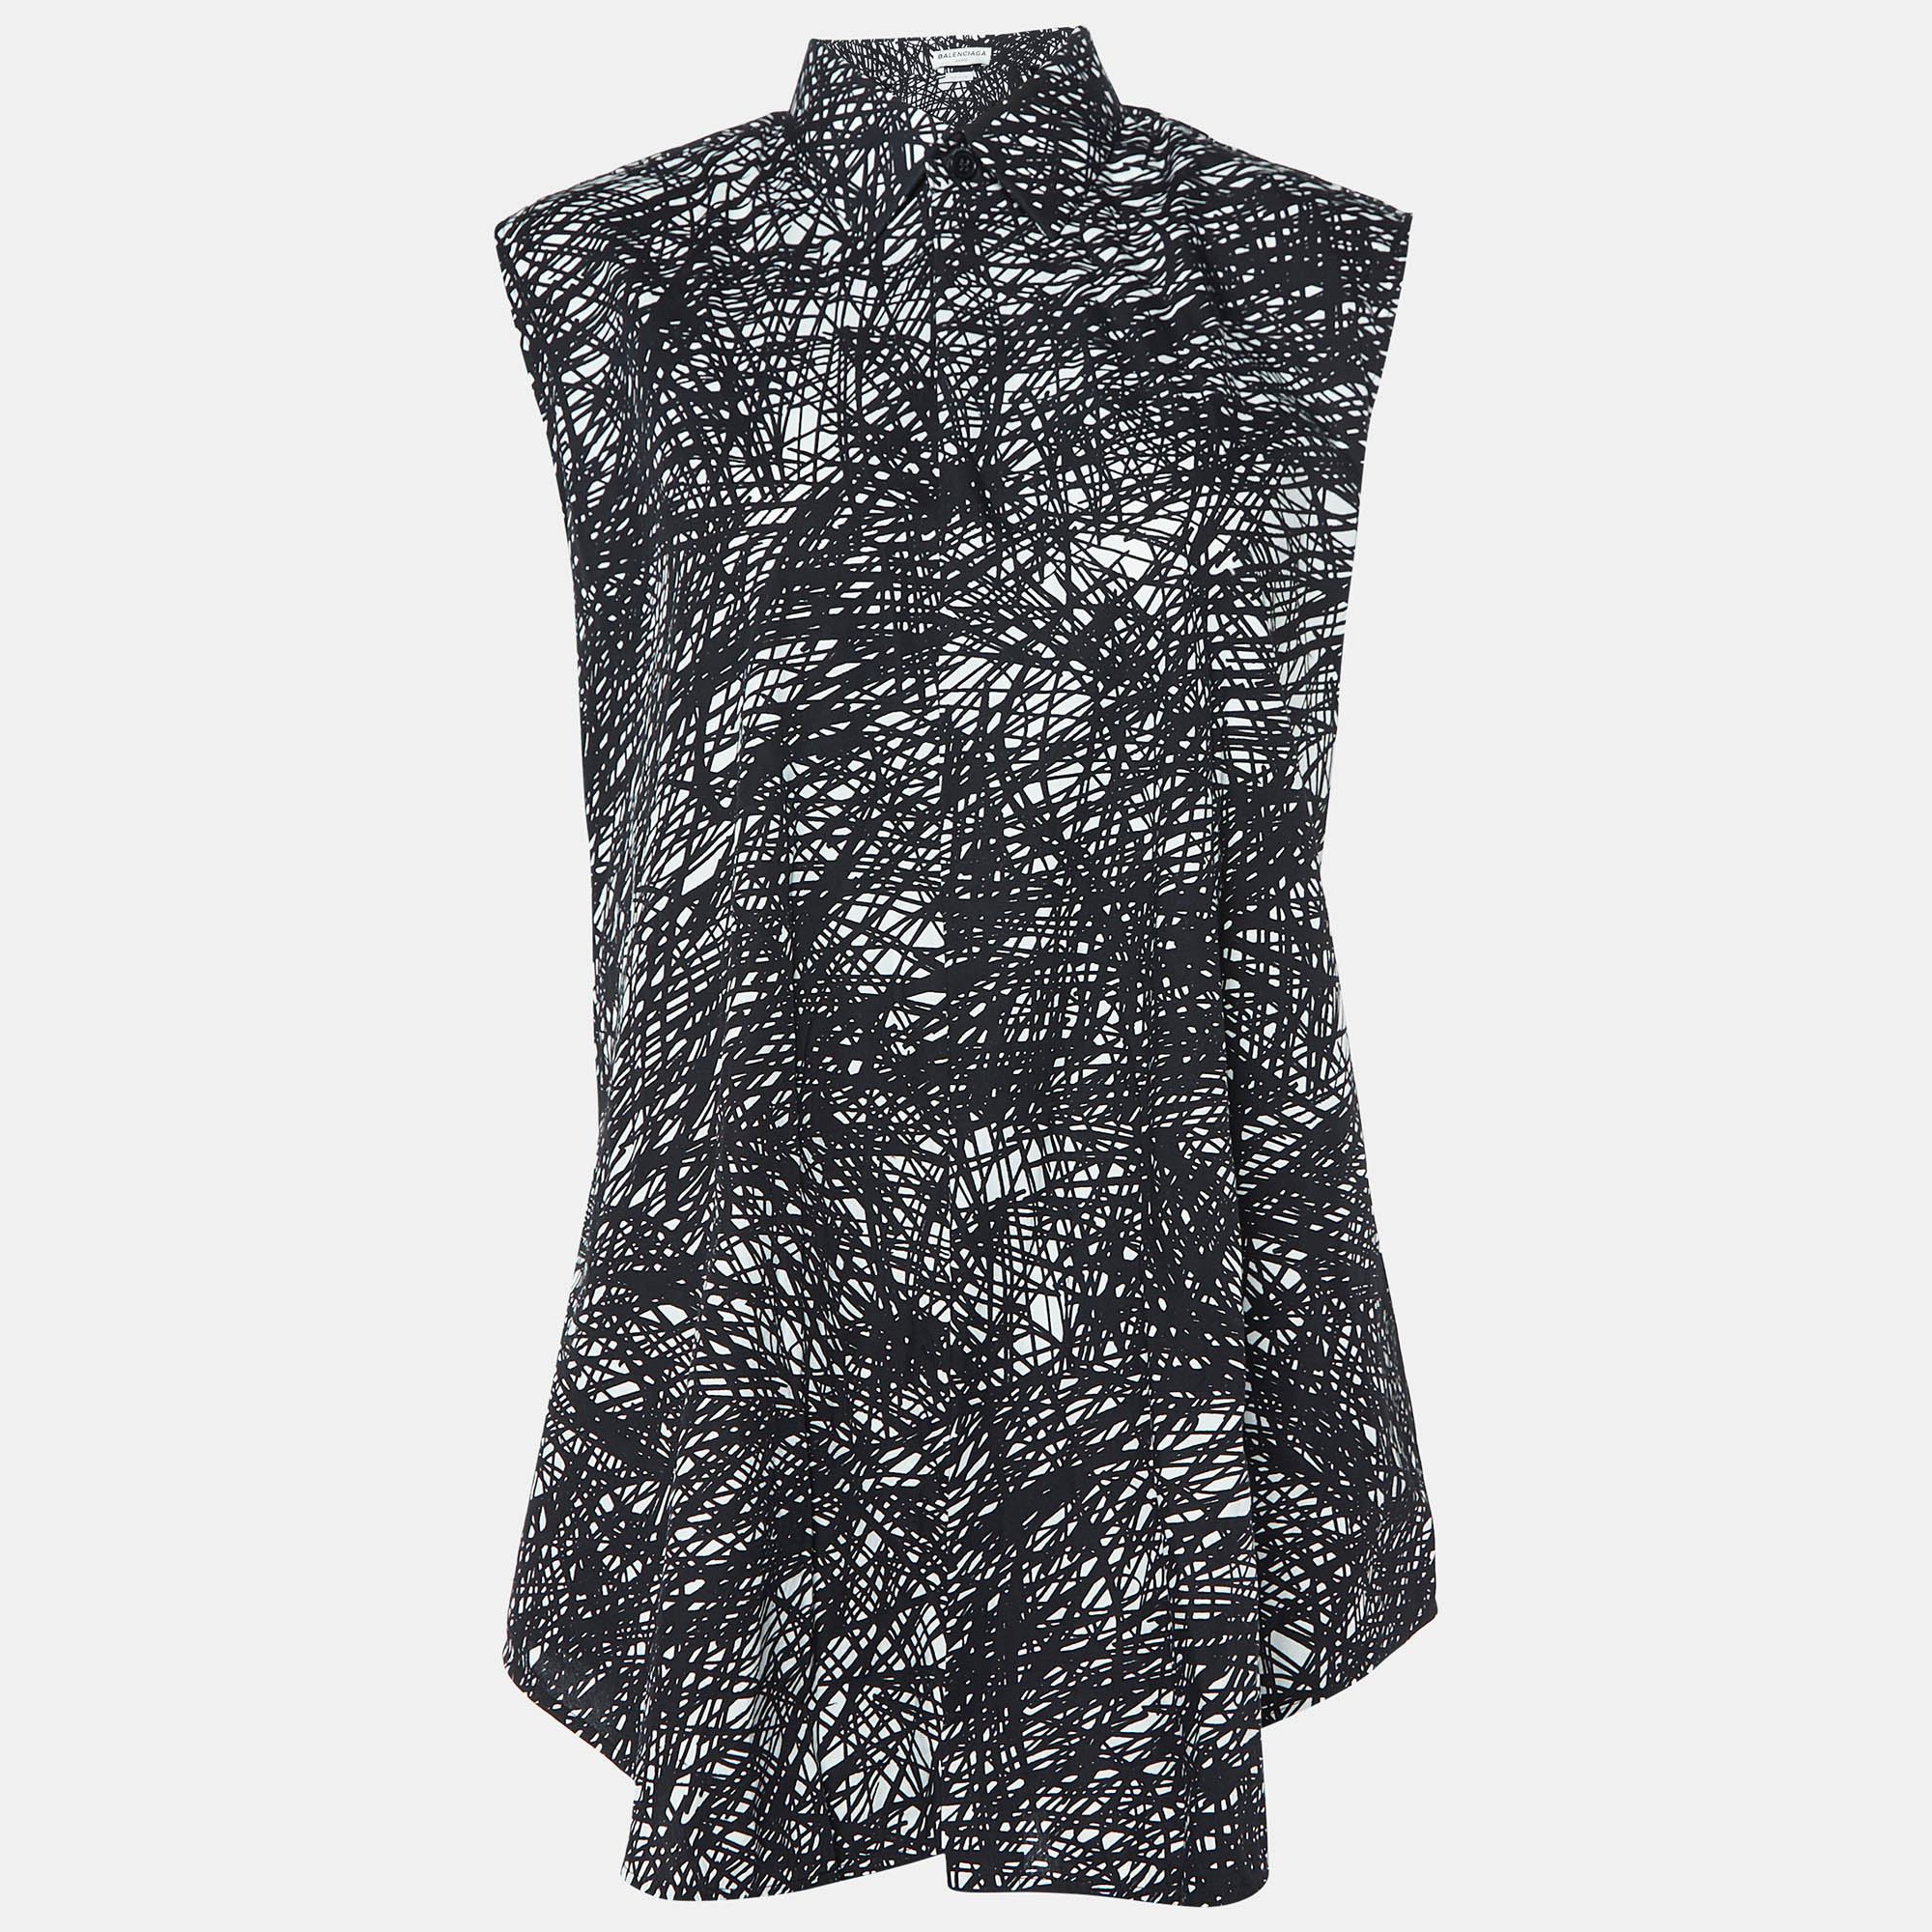 

Balenciaga Black Abstract Print Cotton Single Buttoned Shirt M